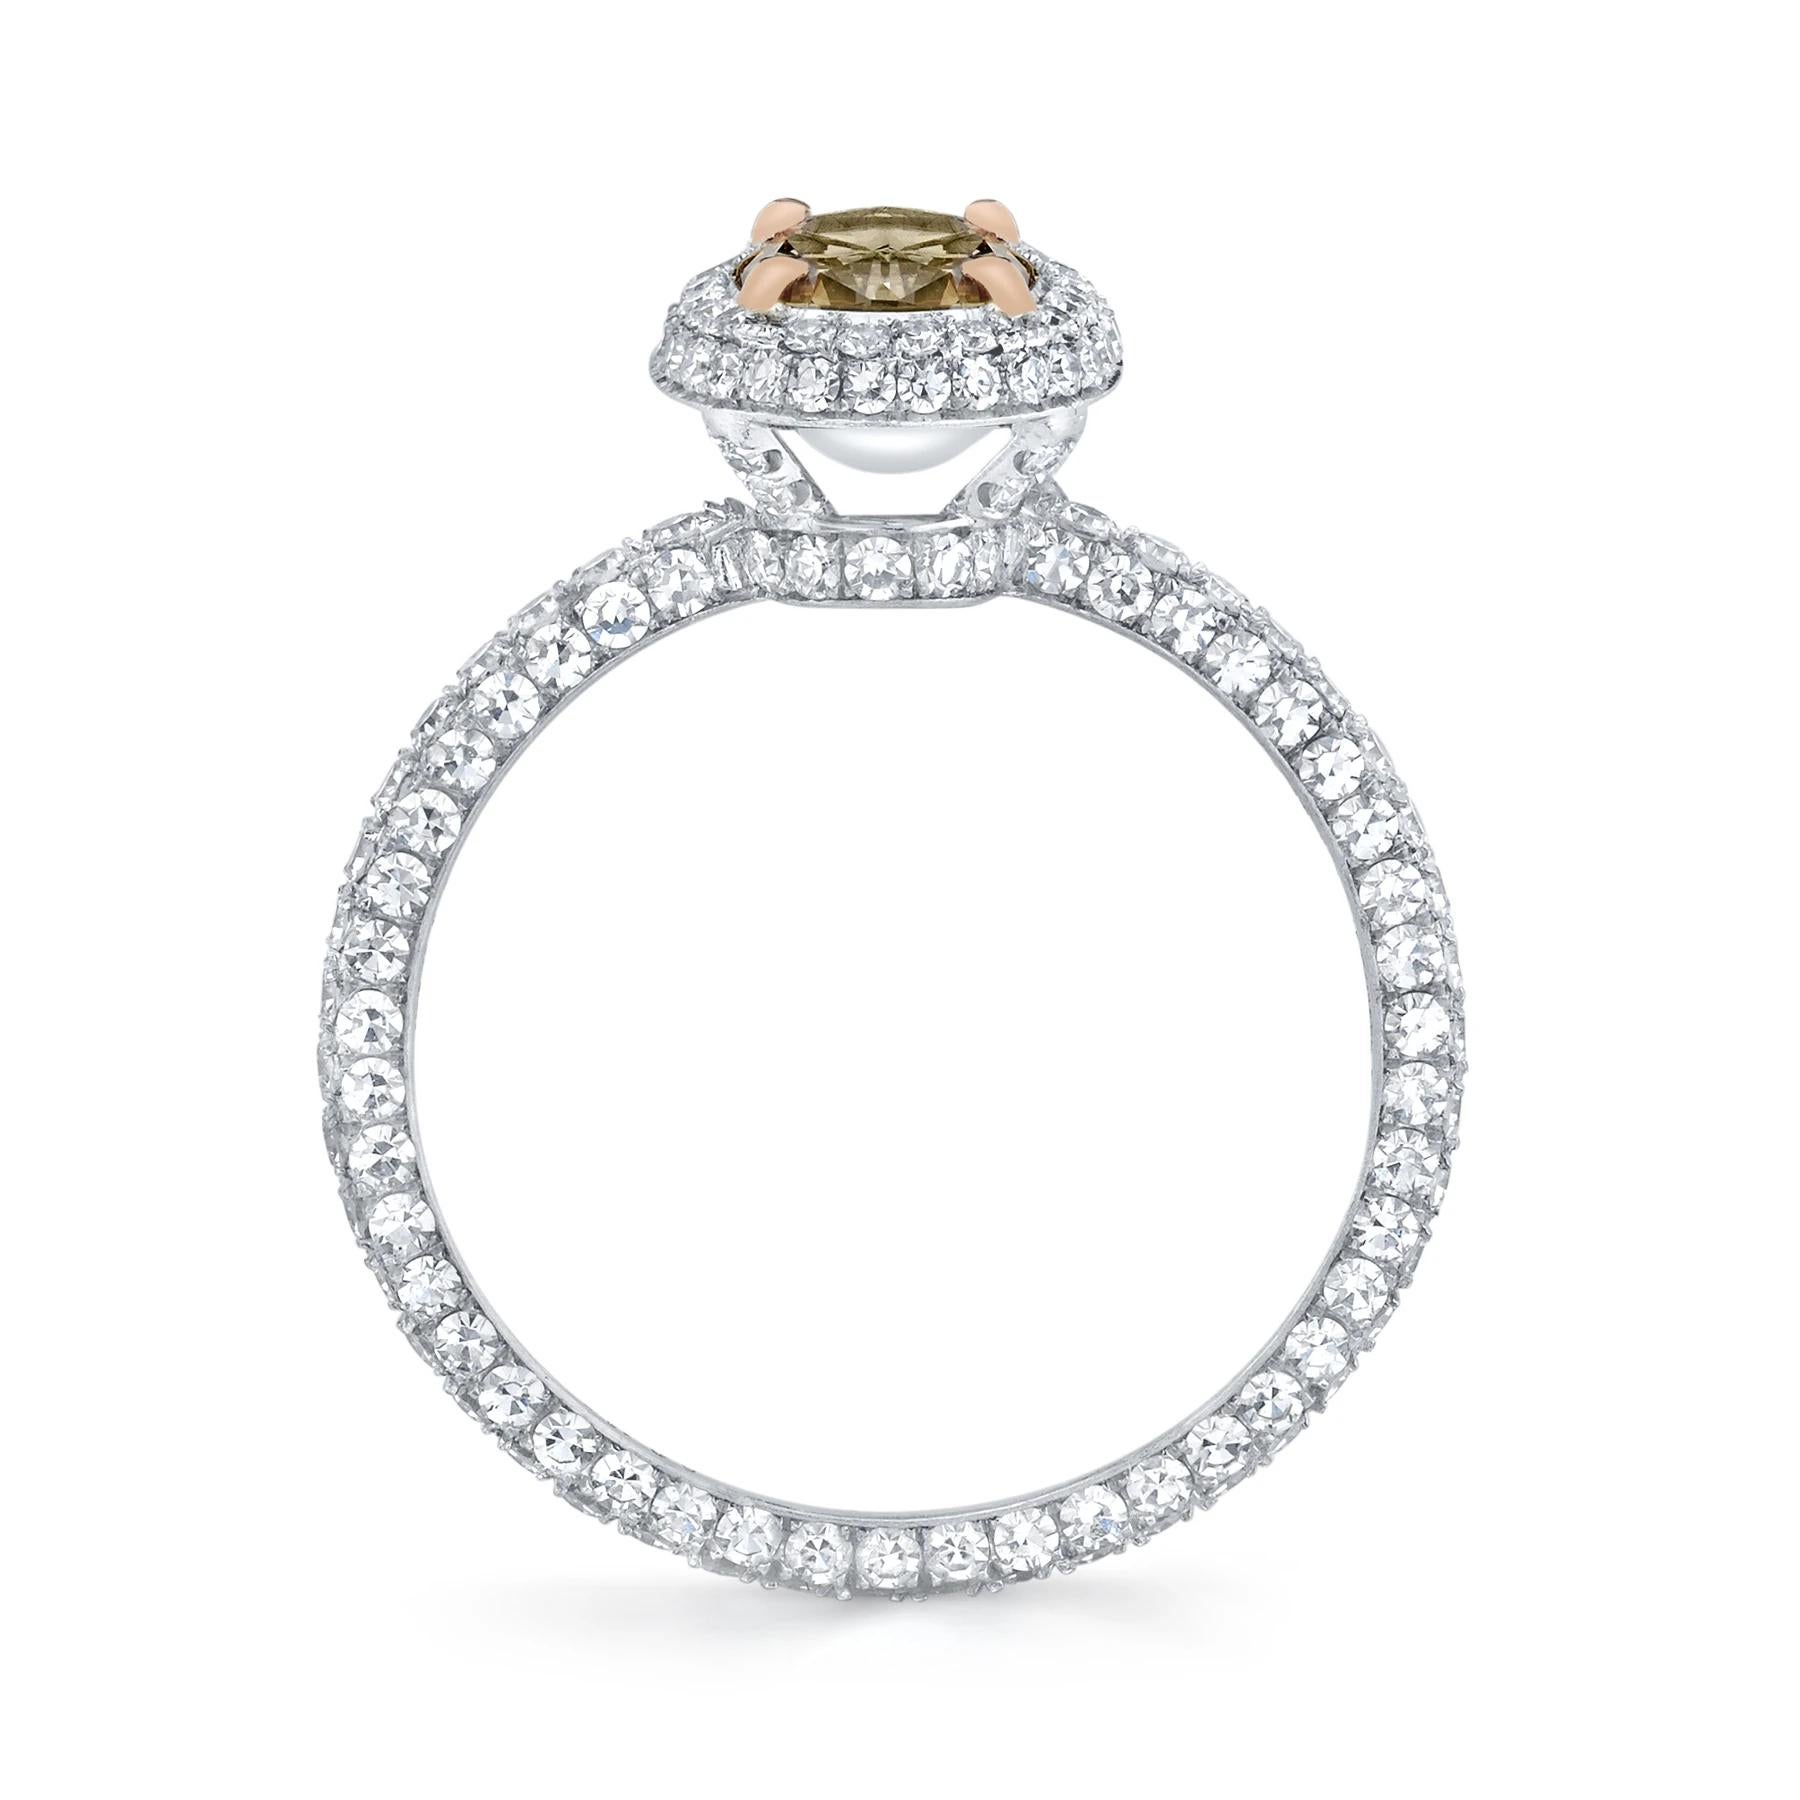 Artisan Neil Lane Couture Design Fancy Color Oval Brilliant-Cut Diamond, Platinum Ring For Sale